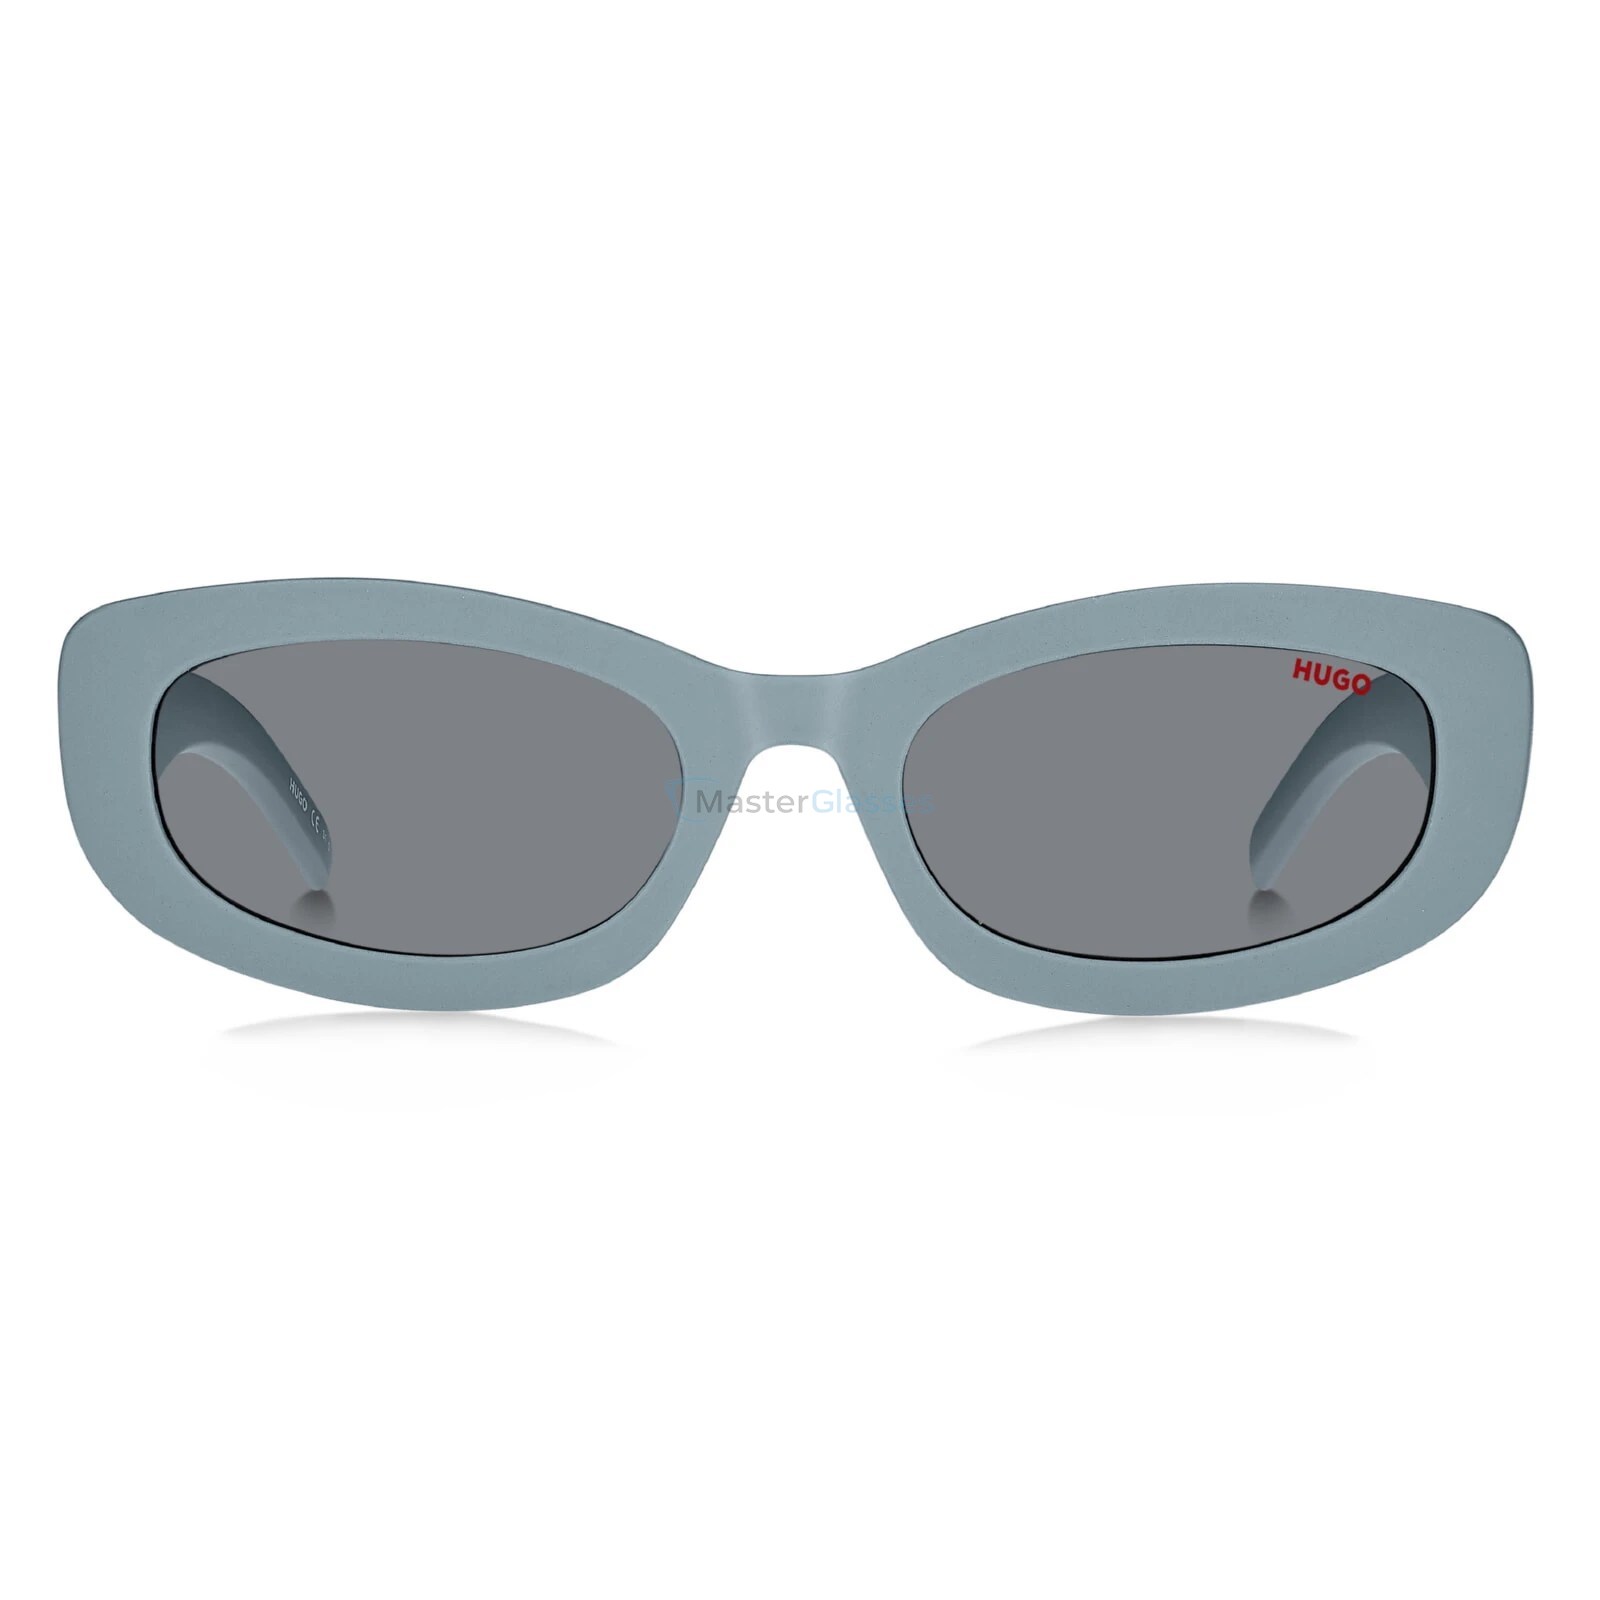 Солнцезащитные очки Hugo HG 1252/S MVU ir. Armani Exchange очки голубые. Hugo HG 1252/S 807 Black. Очки hugo hg